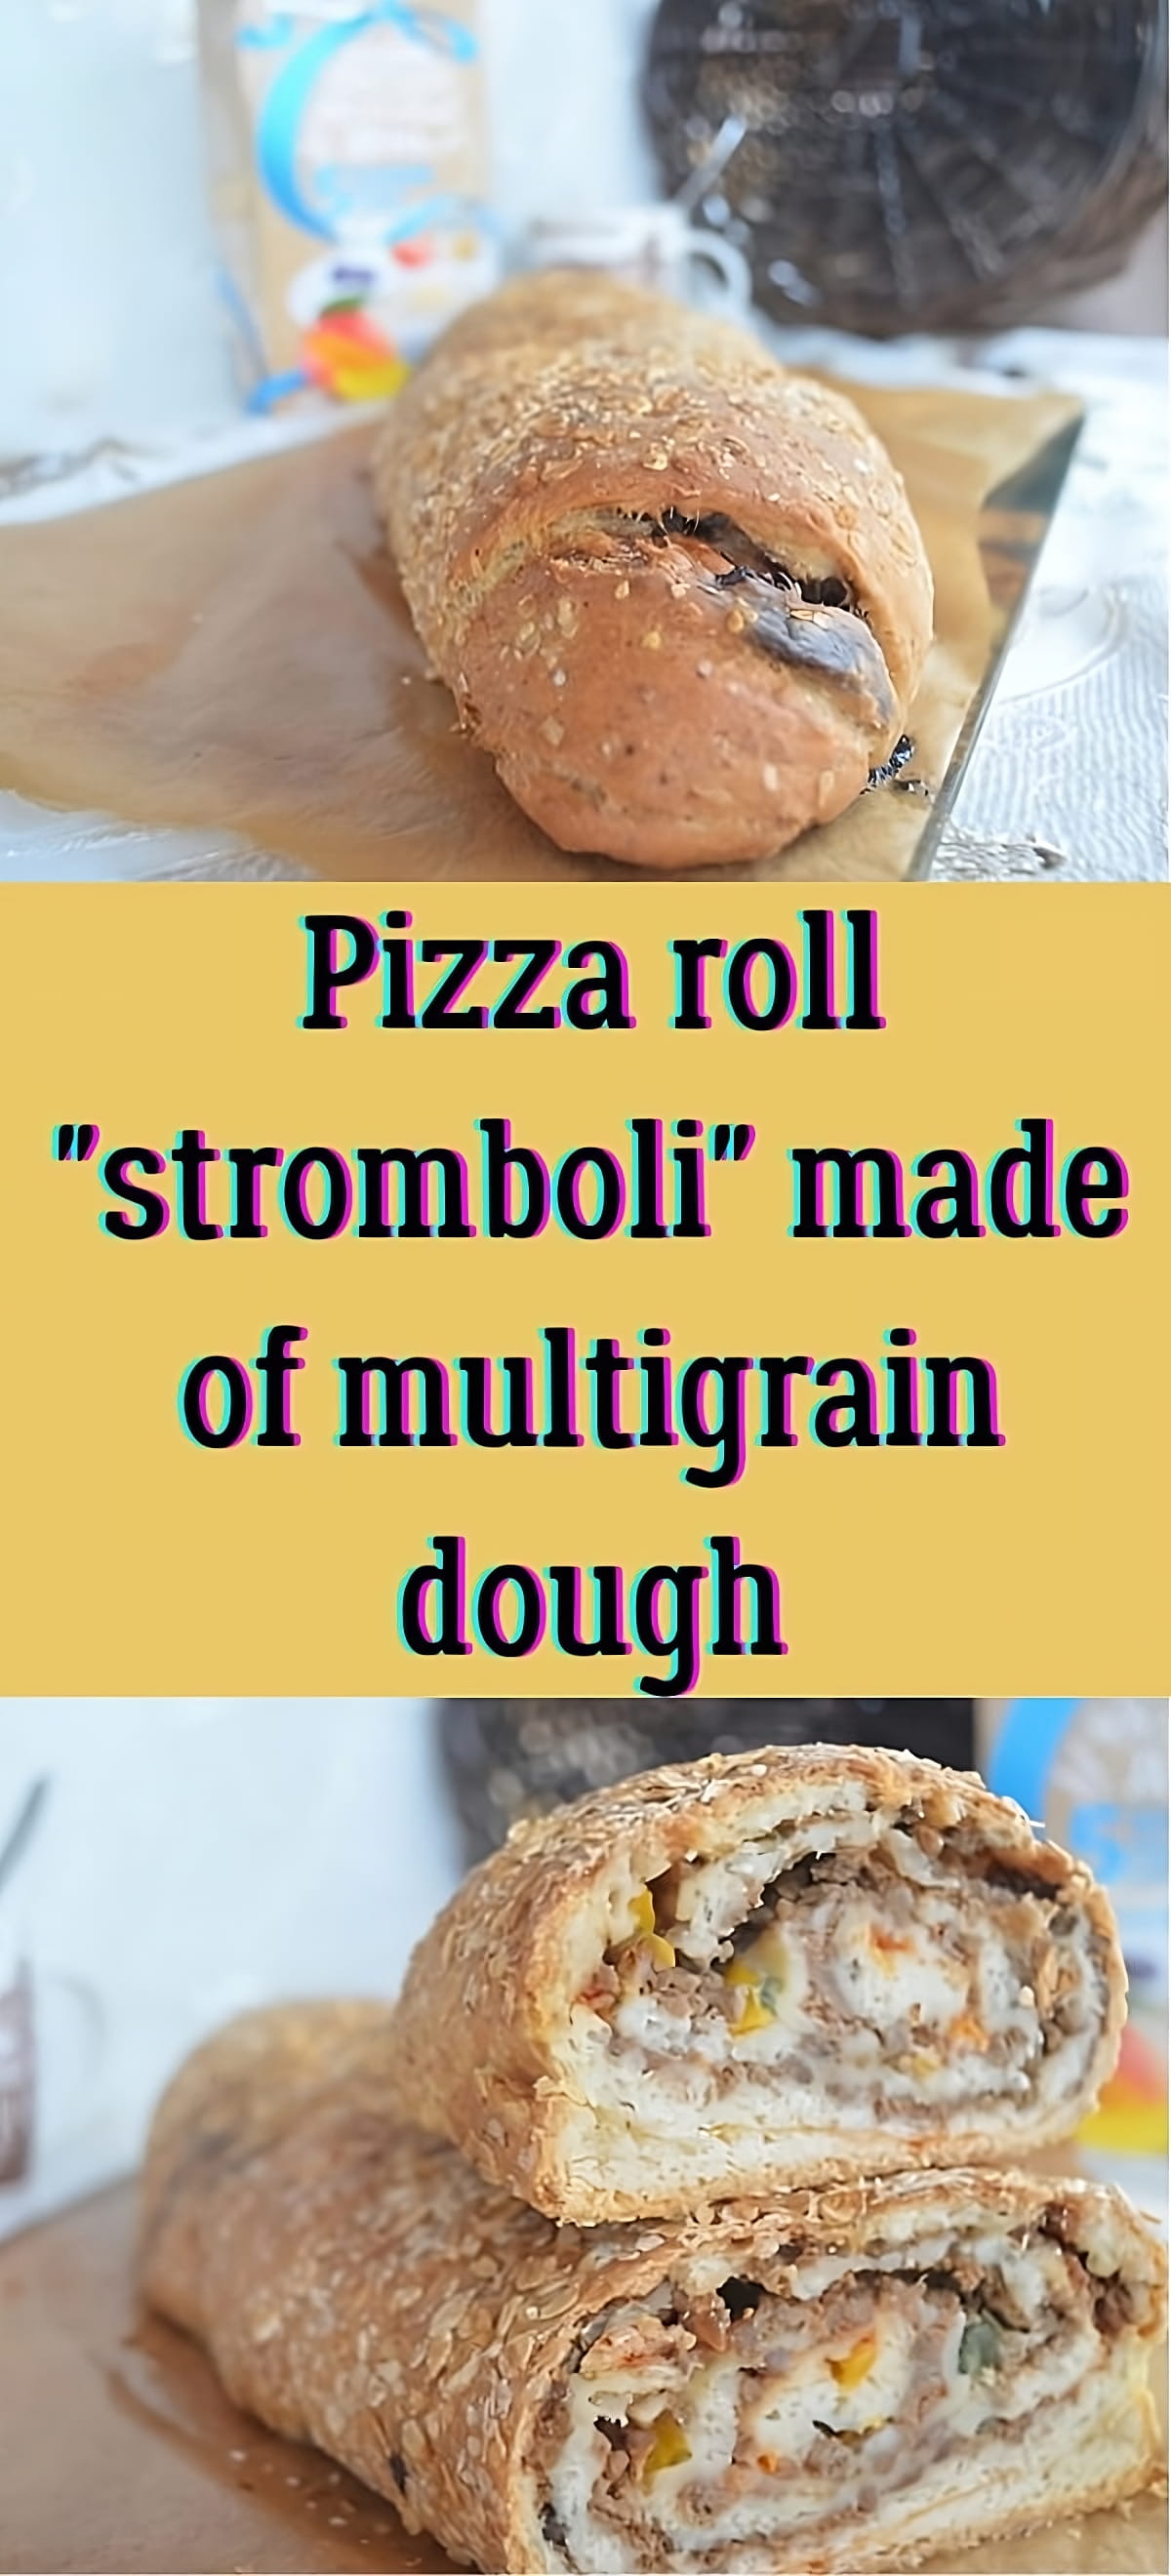 Pizza roll "stromboli" made of multigrain dough